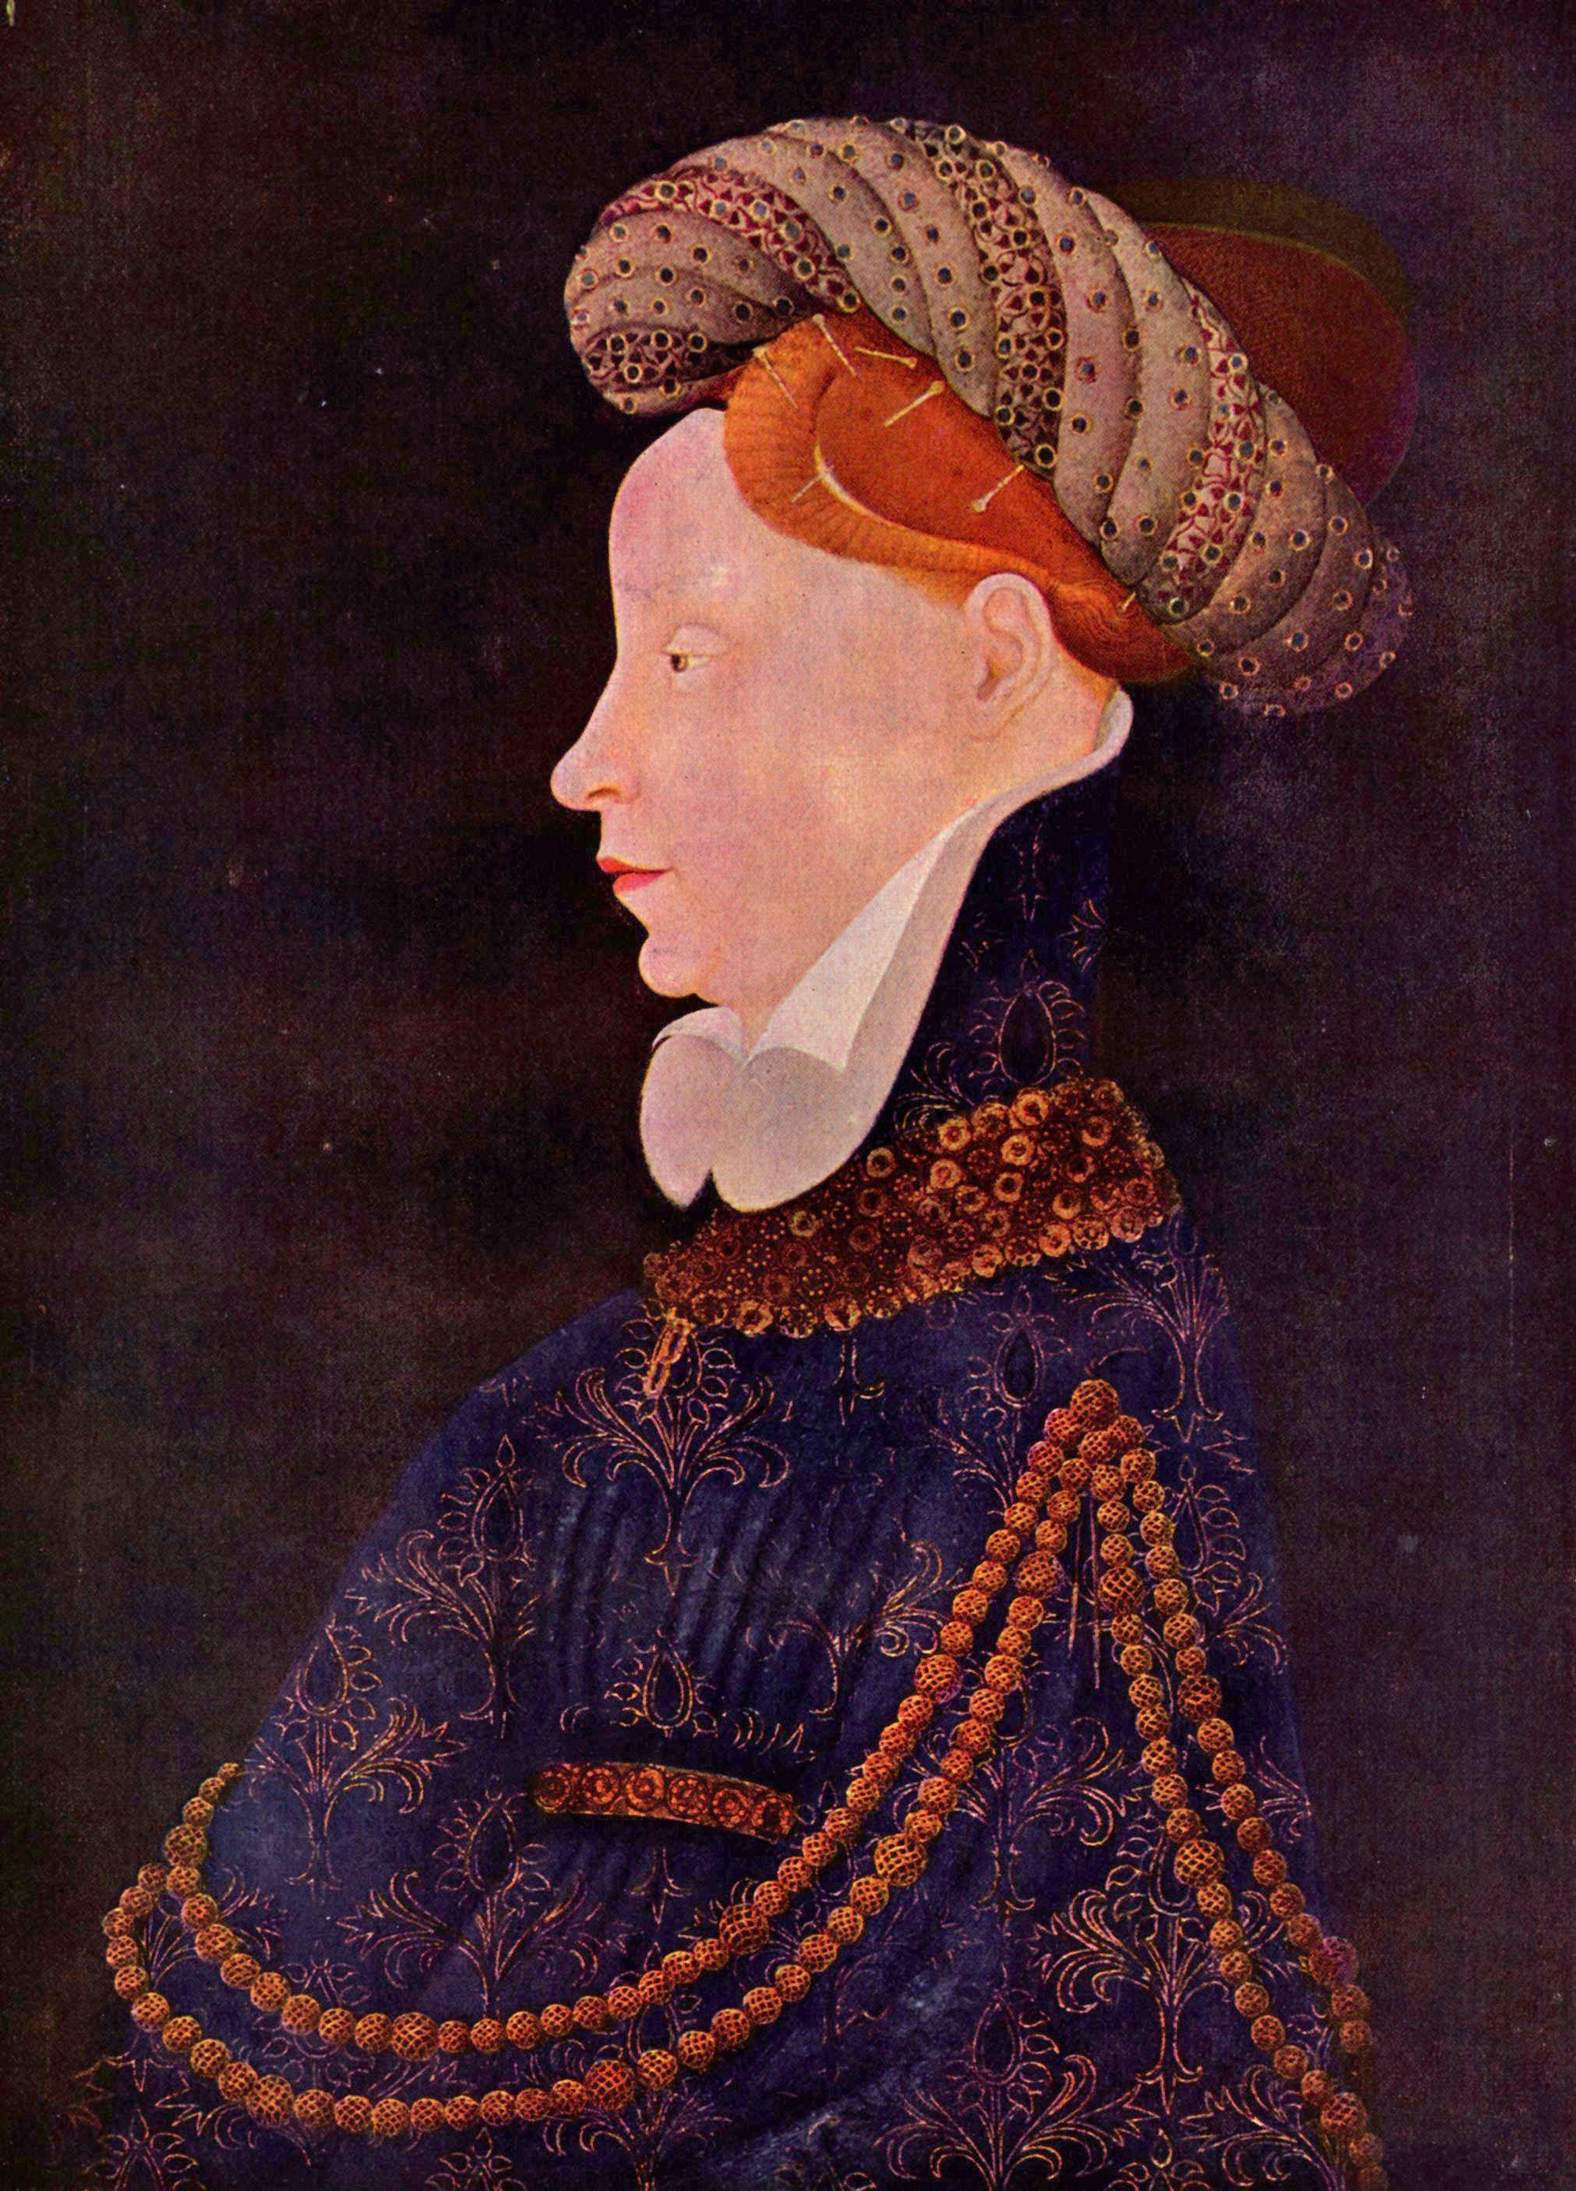 Porträt einer Dame by Franko-flämischer Meister c.1410.